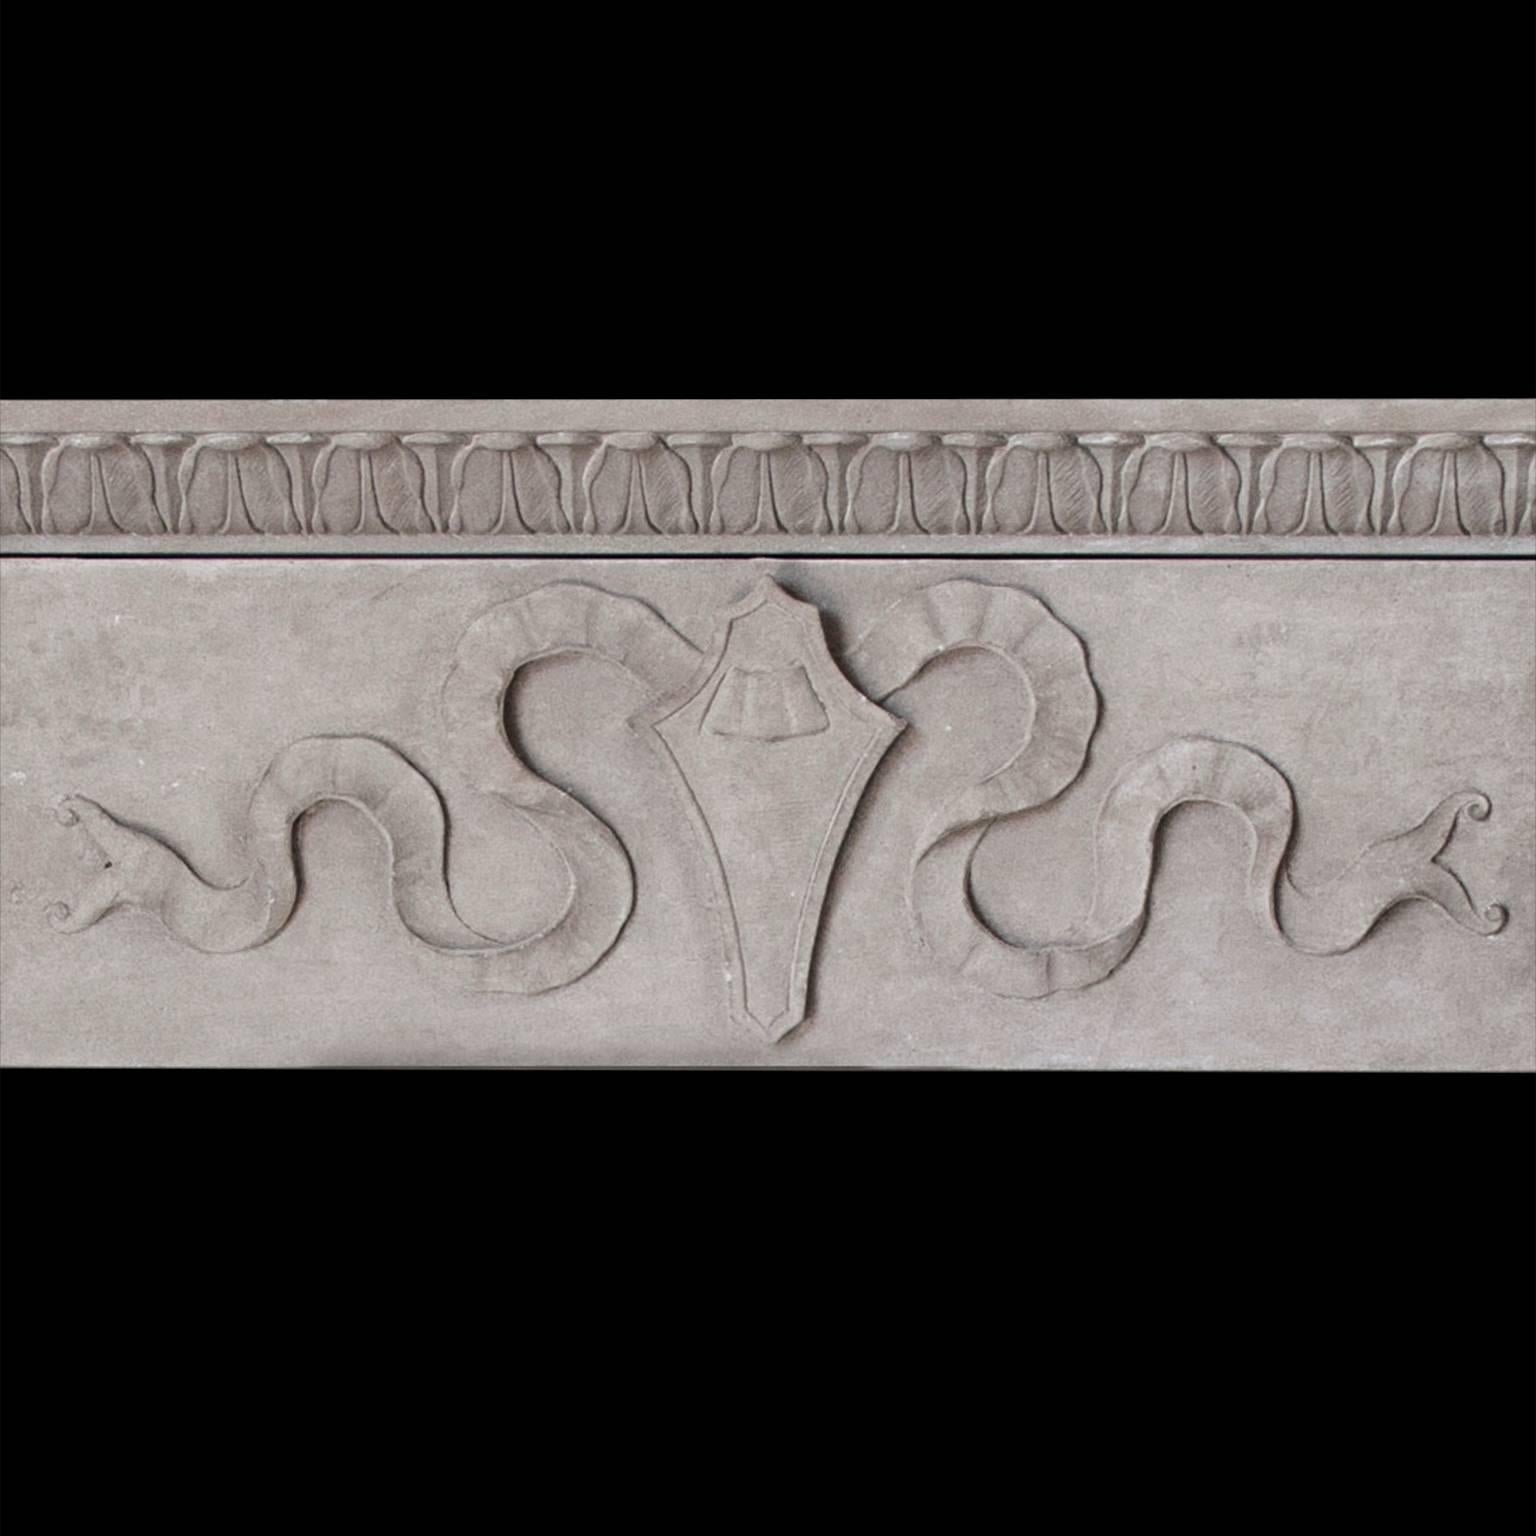 Cette cheminée moderne en grès est ornée d'un bouclier et d'un ruban sculptés sur la frise qui soutient une étagère profonde décorée d'une langue d'agneau. Les jambages de colonne 3/4 supportent des corbeaux à consoles d'acanthe

Dimensions de